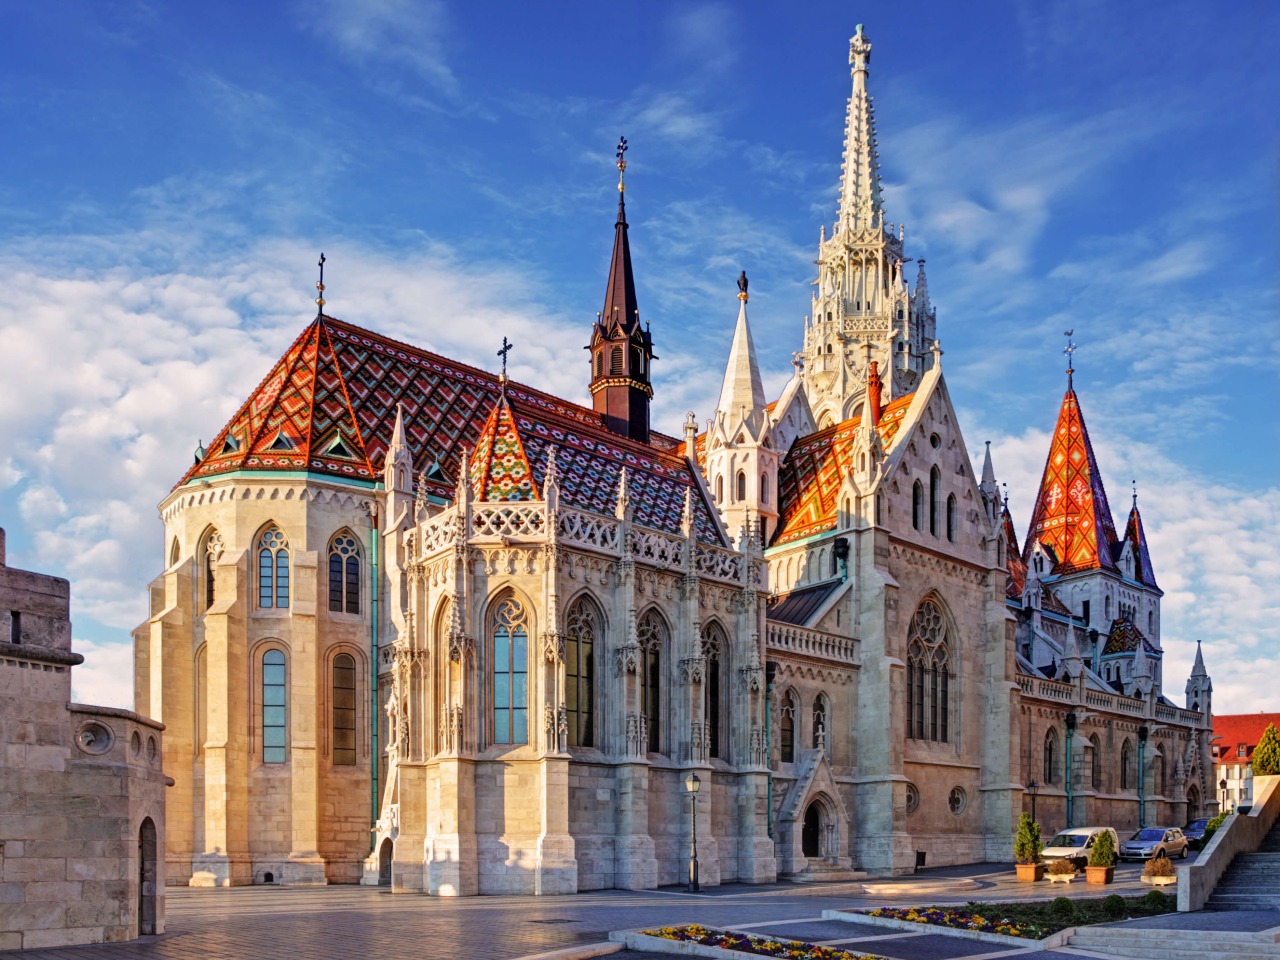 Будапешт во всей красе | Цена 196€, отзывы, описание экскурсии